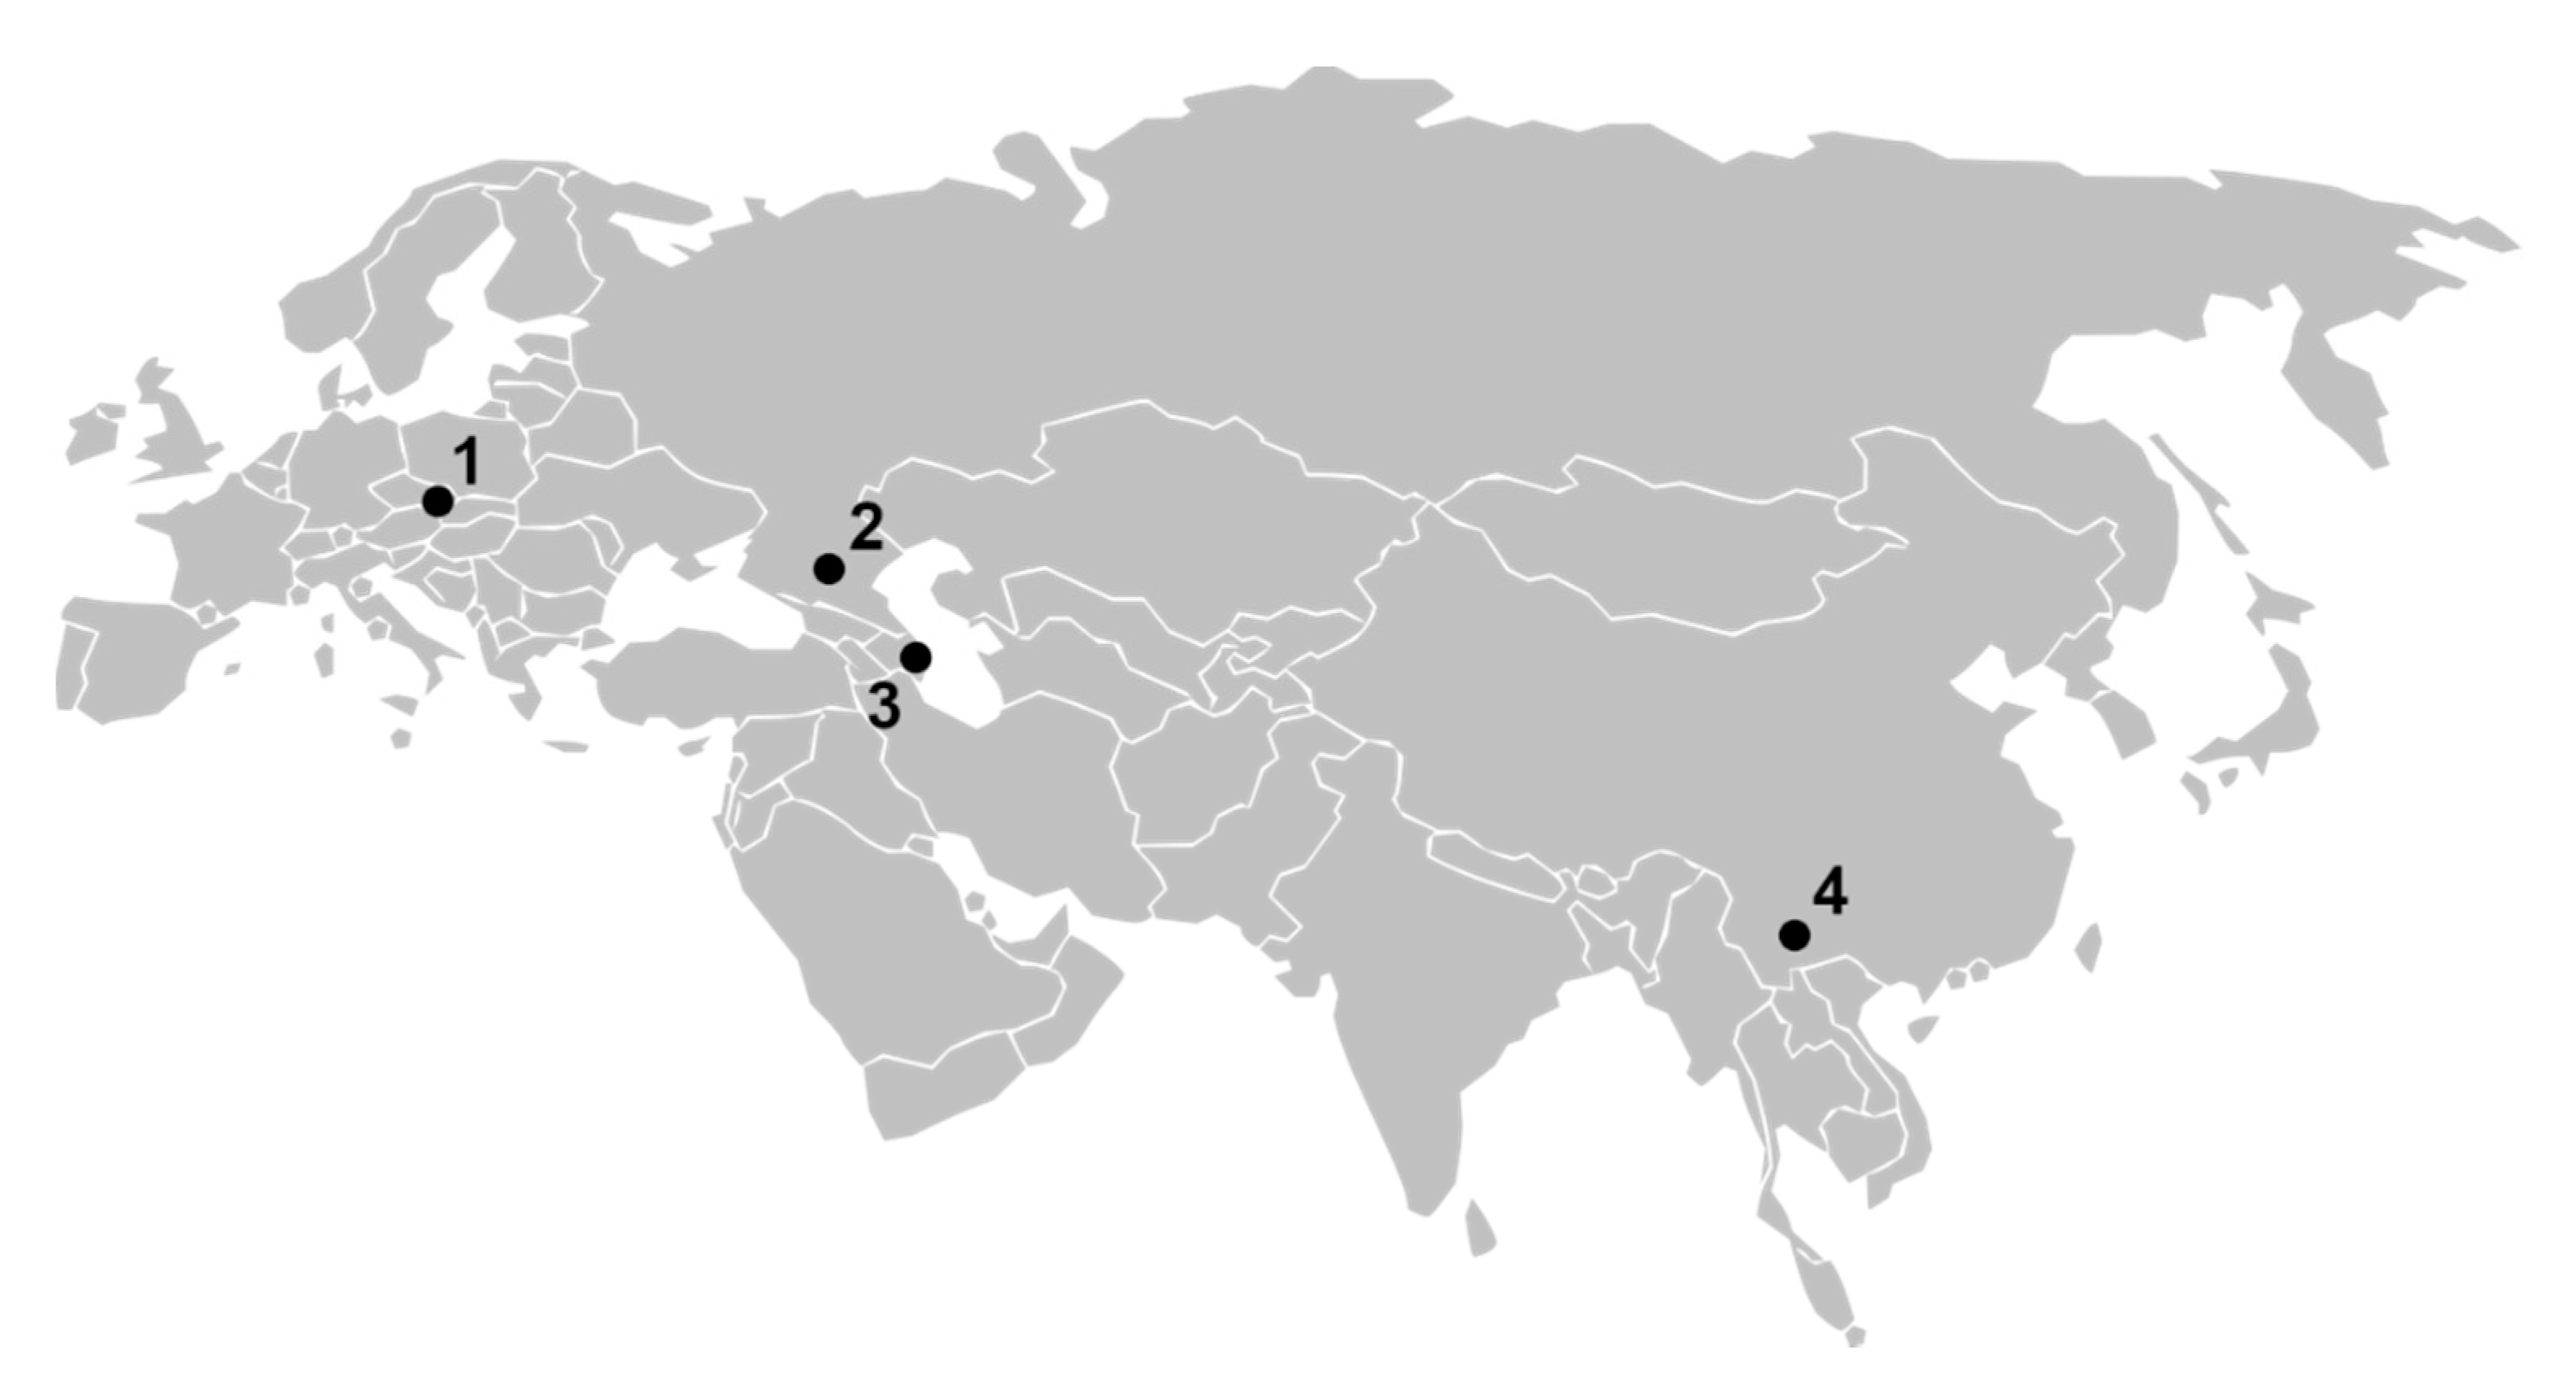 White asia. Багдадский пакт 1955. Карта Евразийского континента. Континент Евразия на карте. Схематическая карта Евразии.